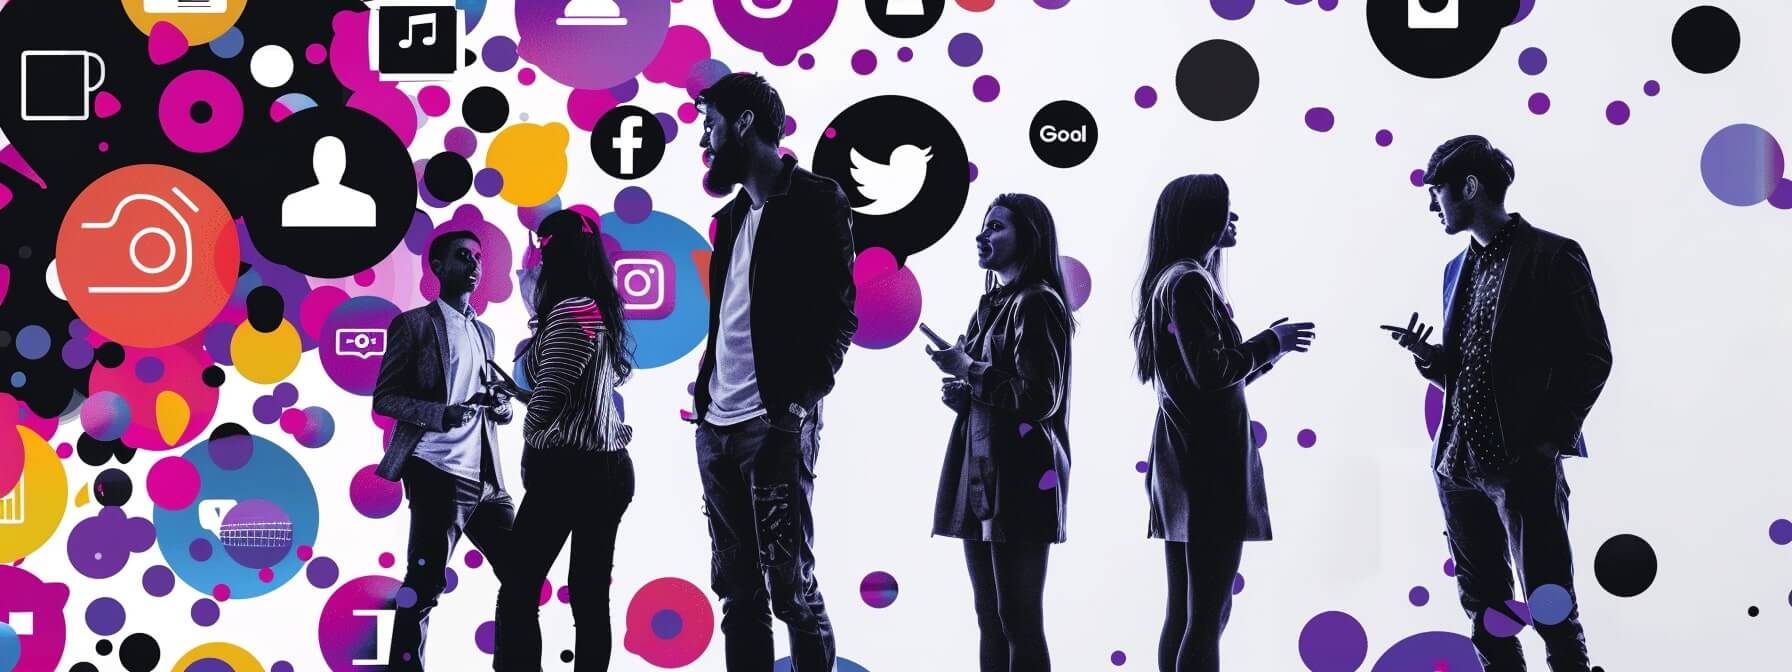 Content Strategie Symbolbild - Junge Leute beim Diskutieren zwischen Social Media Icons